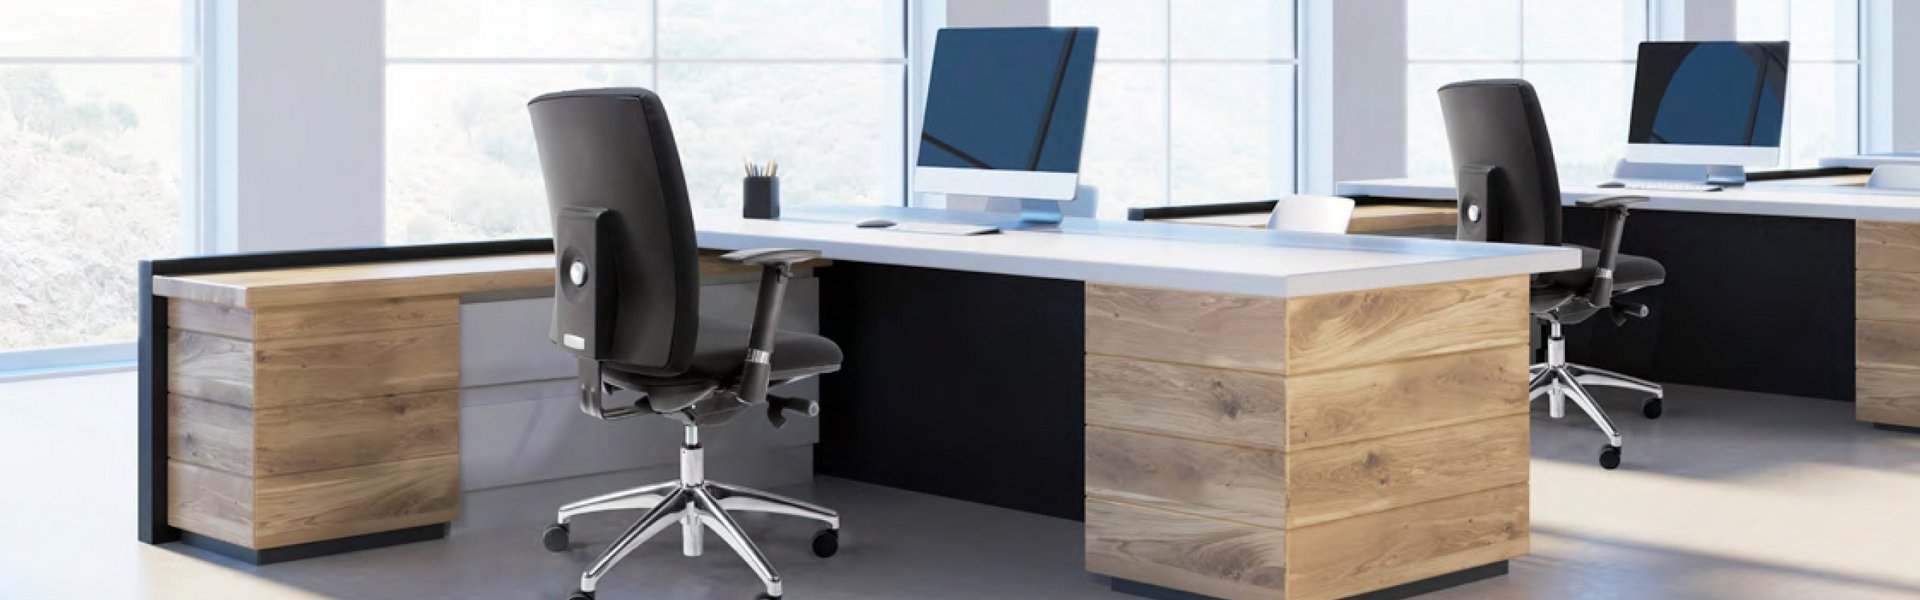 Unser Angebot umfasst sowohl klassische als auch moderne Bürostühle, von ergonomischen Stühlen für Gesundheit und Wohlbefinden bis hin zu luxuriösen Ledersesseln für eine professionelle Atmosphäre.